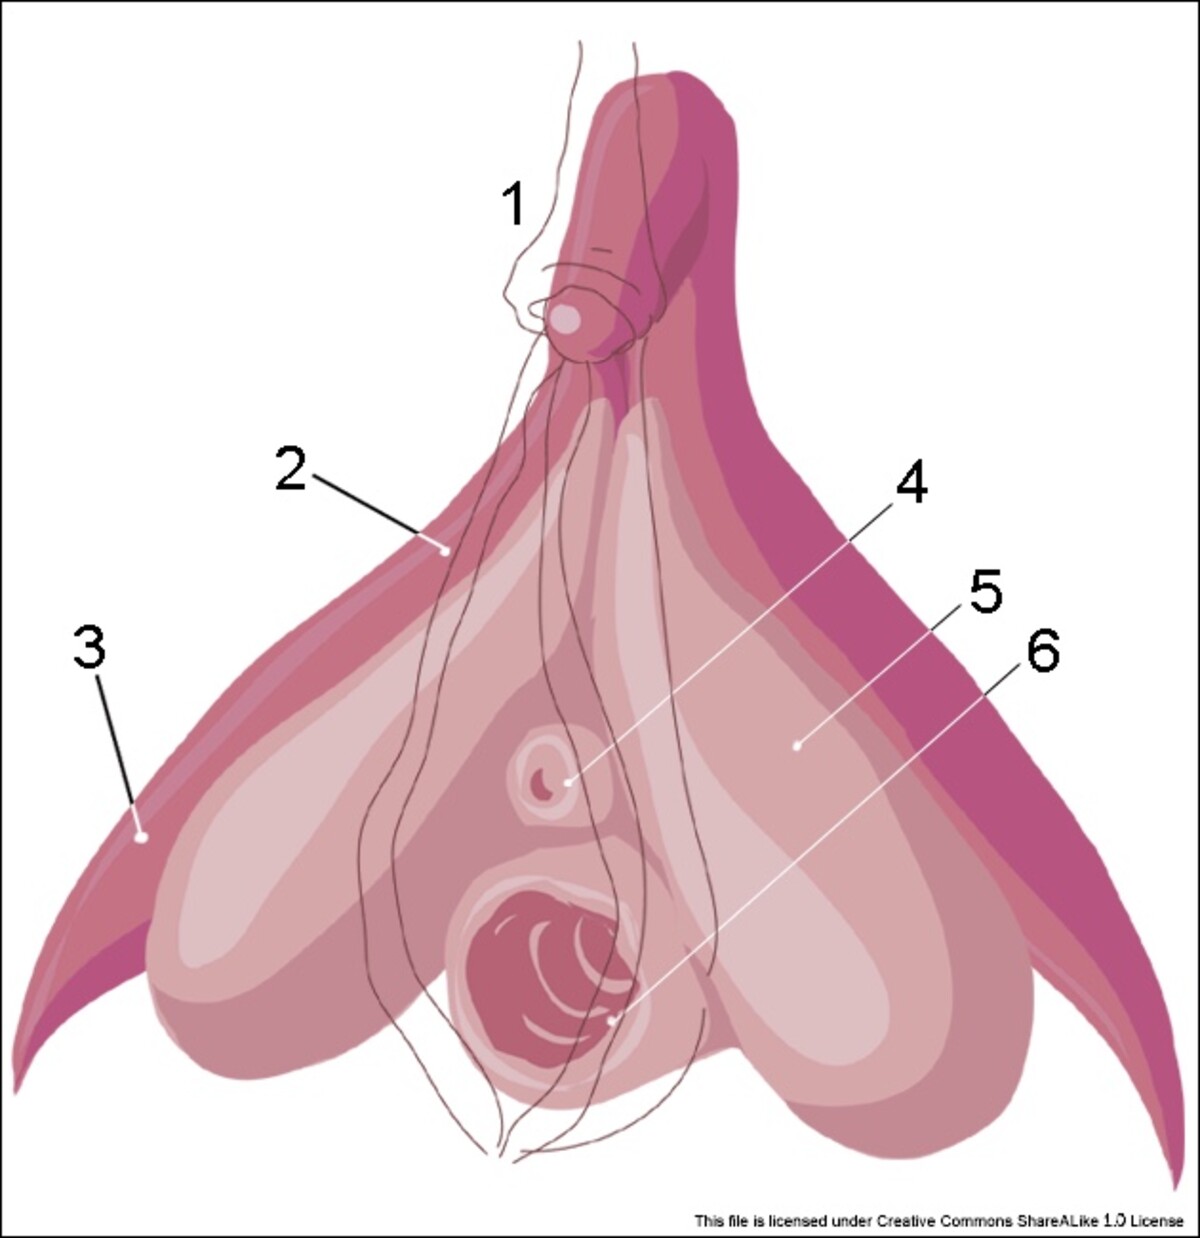 1: poštěváčková kapuce, 2: corpus cavernosum, 3: crus clitoris, 4: ústí močové trubice, 5: bulbus vestibuli, 6: poševní vchod.